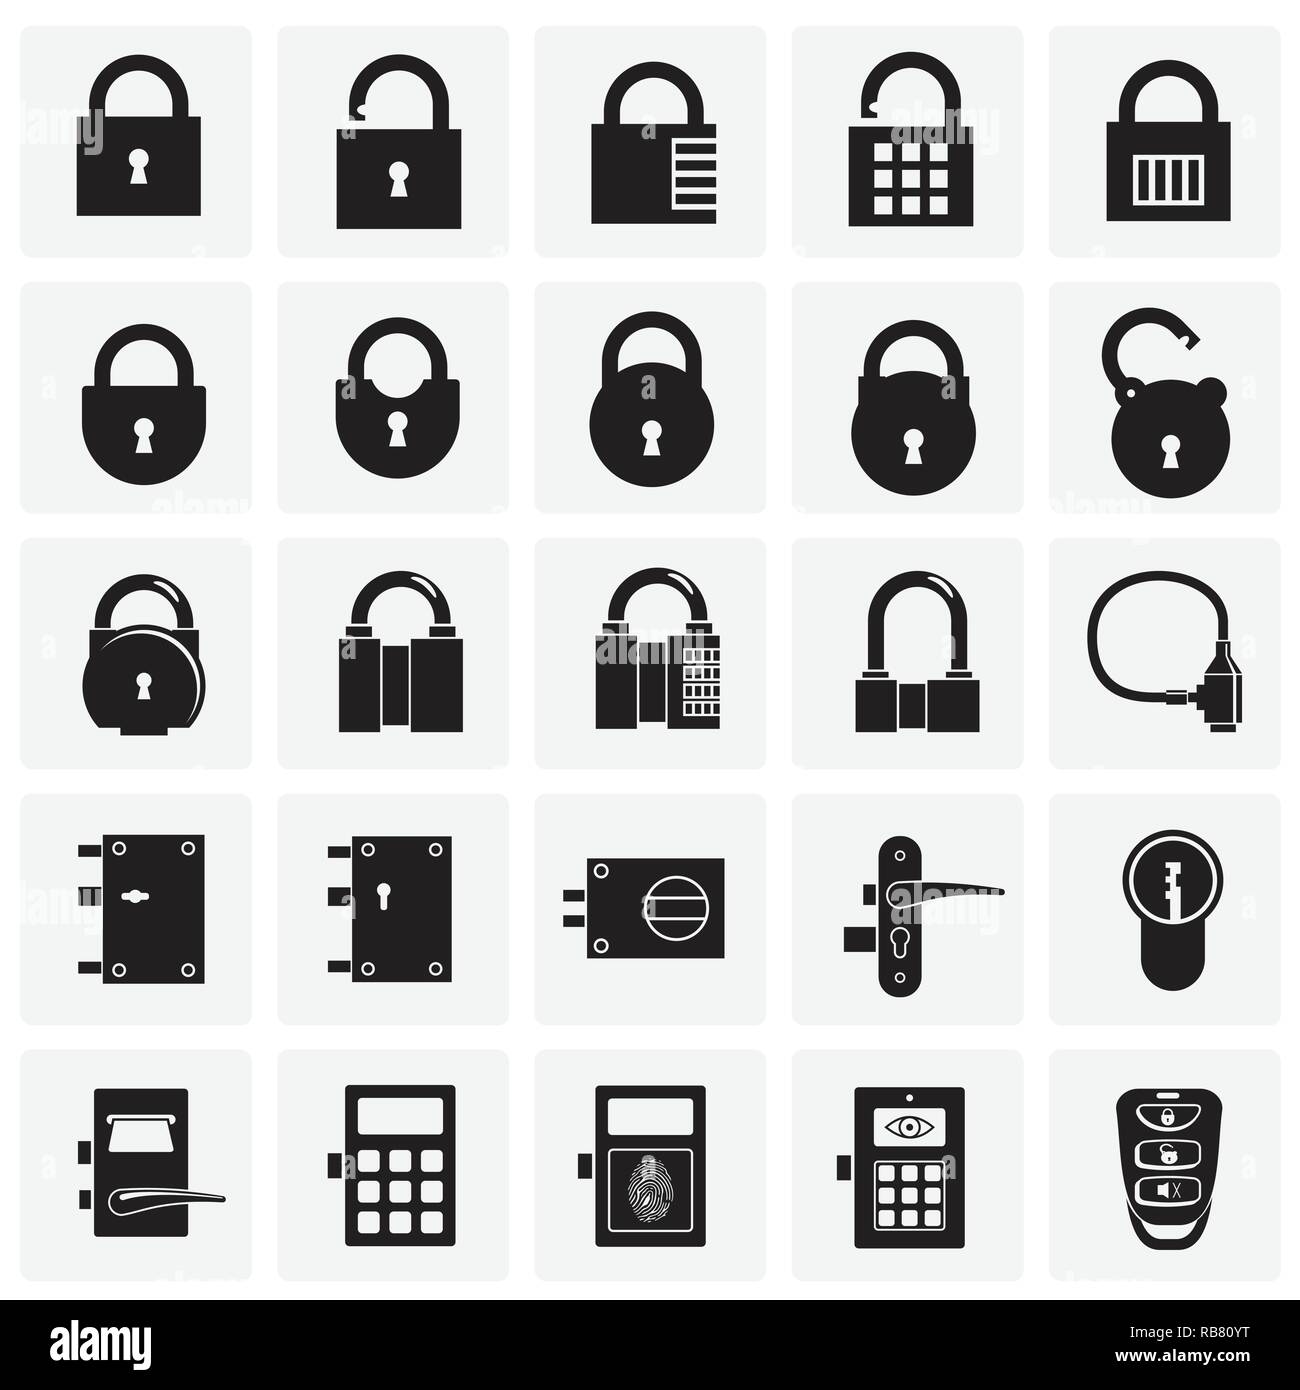 Bộ biểu tượng khóa: Bộ biểu tượng khóa giúp bạn bảo vệ thông tin quan trọng của mình trên các thiết bị điện tử. Biểu tượng khóa đảm bảo cho người dùng một mức độ an toàn và bảo mật trong việc lưu trữ thông tin. Hãy xem qua bộ biểu tượng khóa để biết thêm chi tiết.